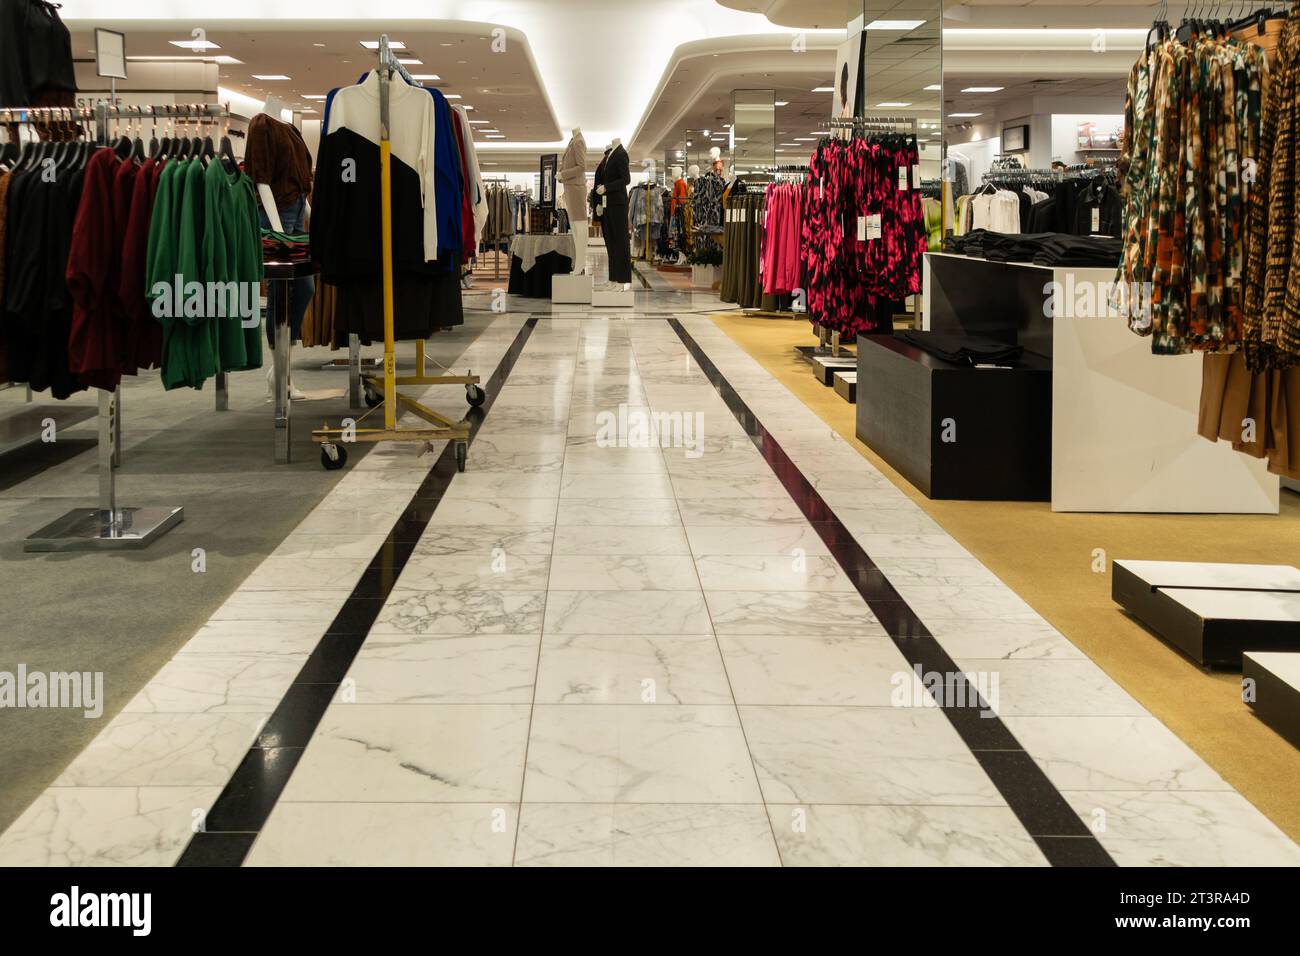 Intérieur du grand magasin Dillard's, une boutique haut de gamme proposant des vêtements, des accessoires et des articles ménagers à Wichita, Kansas, États-Unis. Allée des vêtements. Banque D'Images